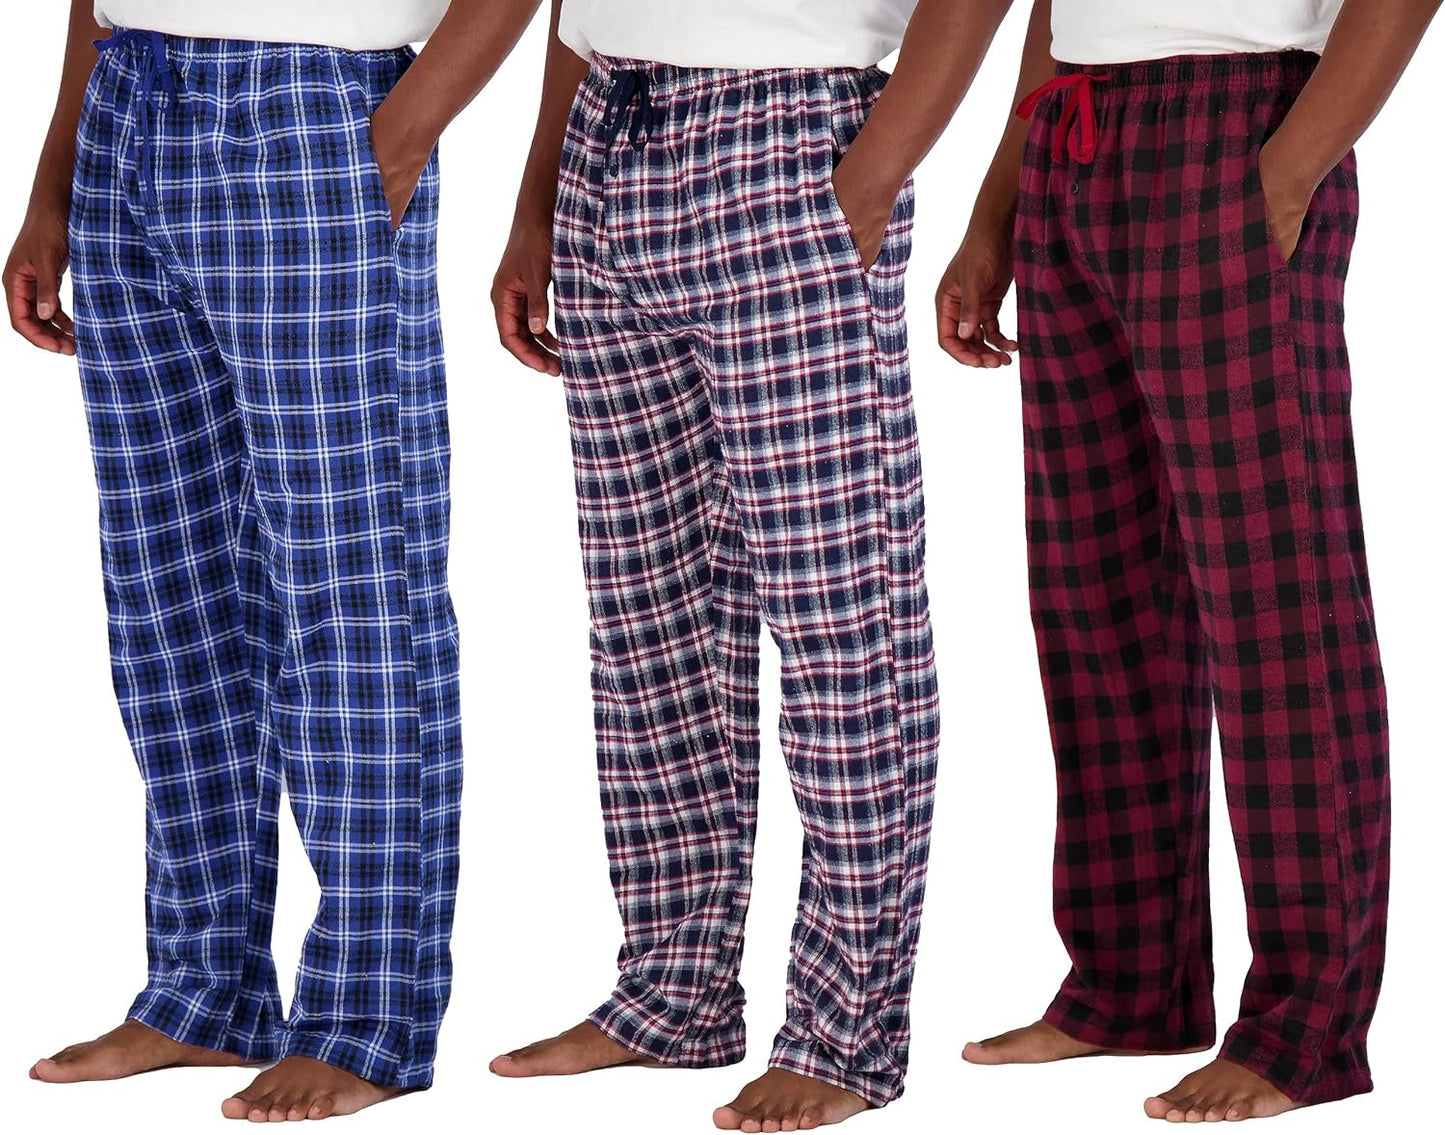 Wholesale Men's Pajama Pants, Knit Cotton Flannel Plaid Lounge Bottoms - All Styles